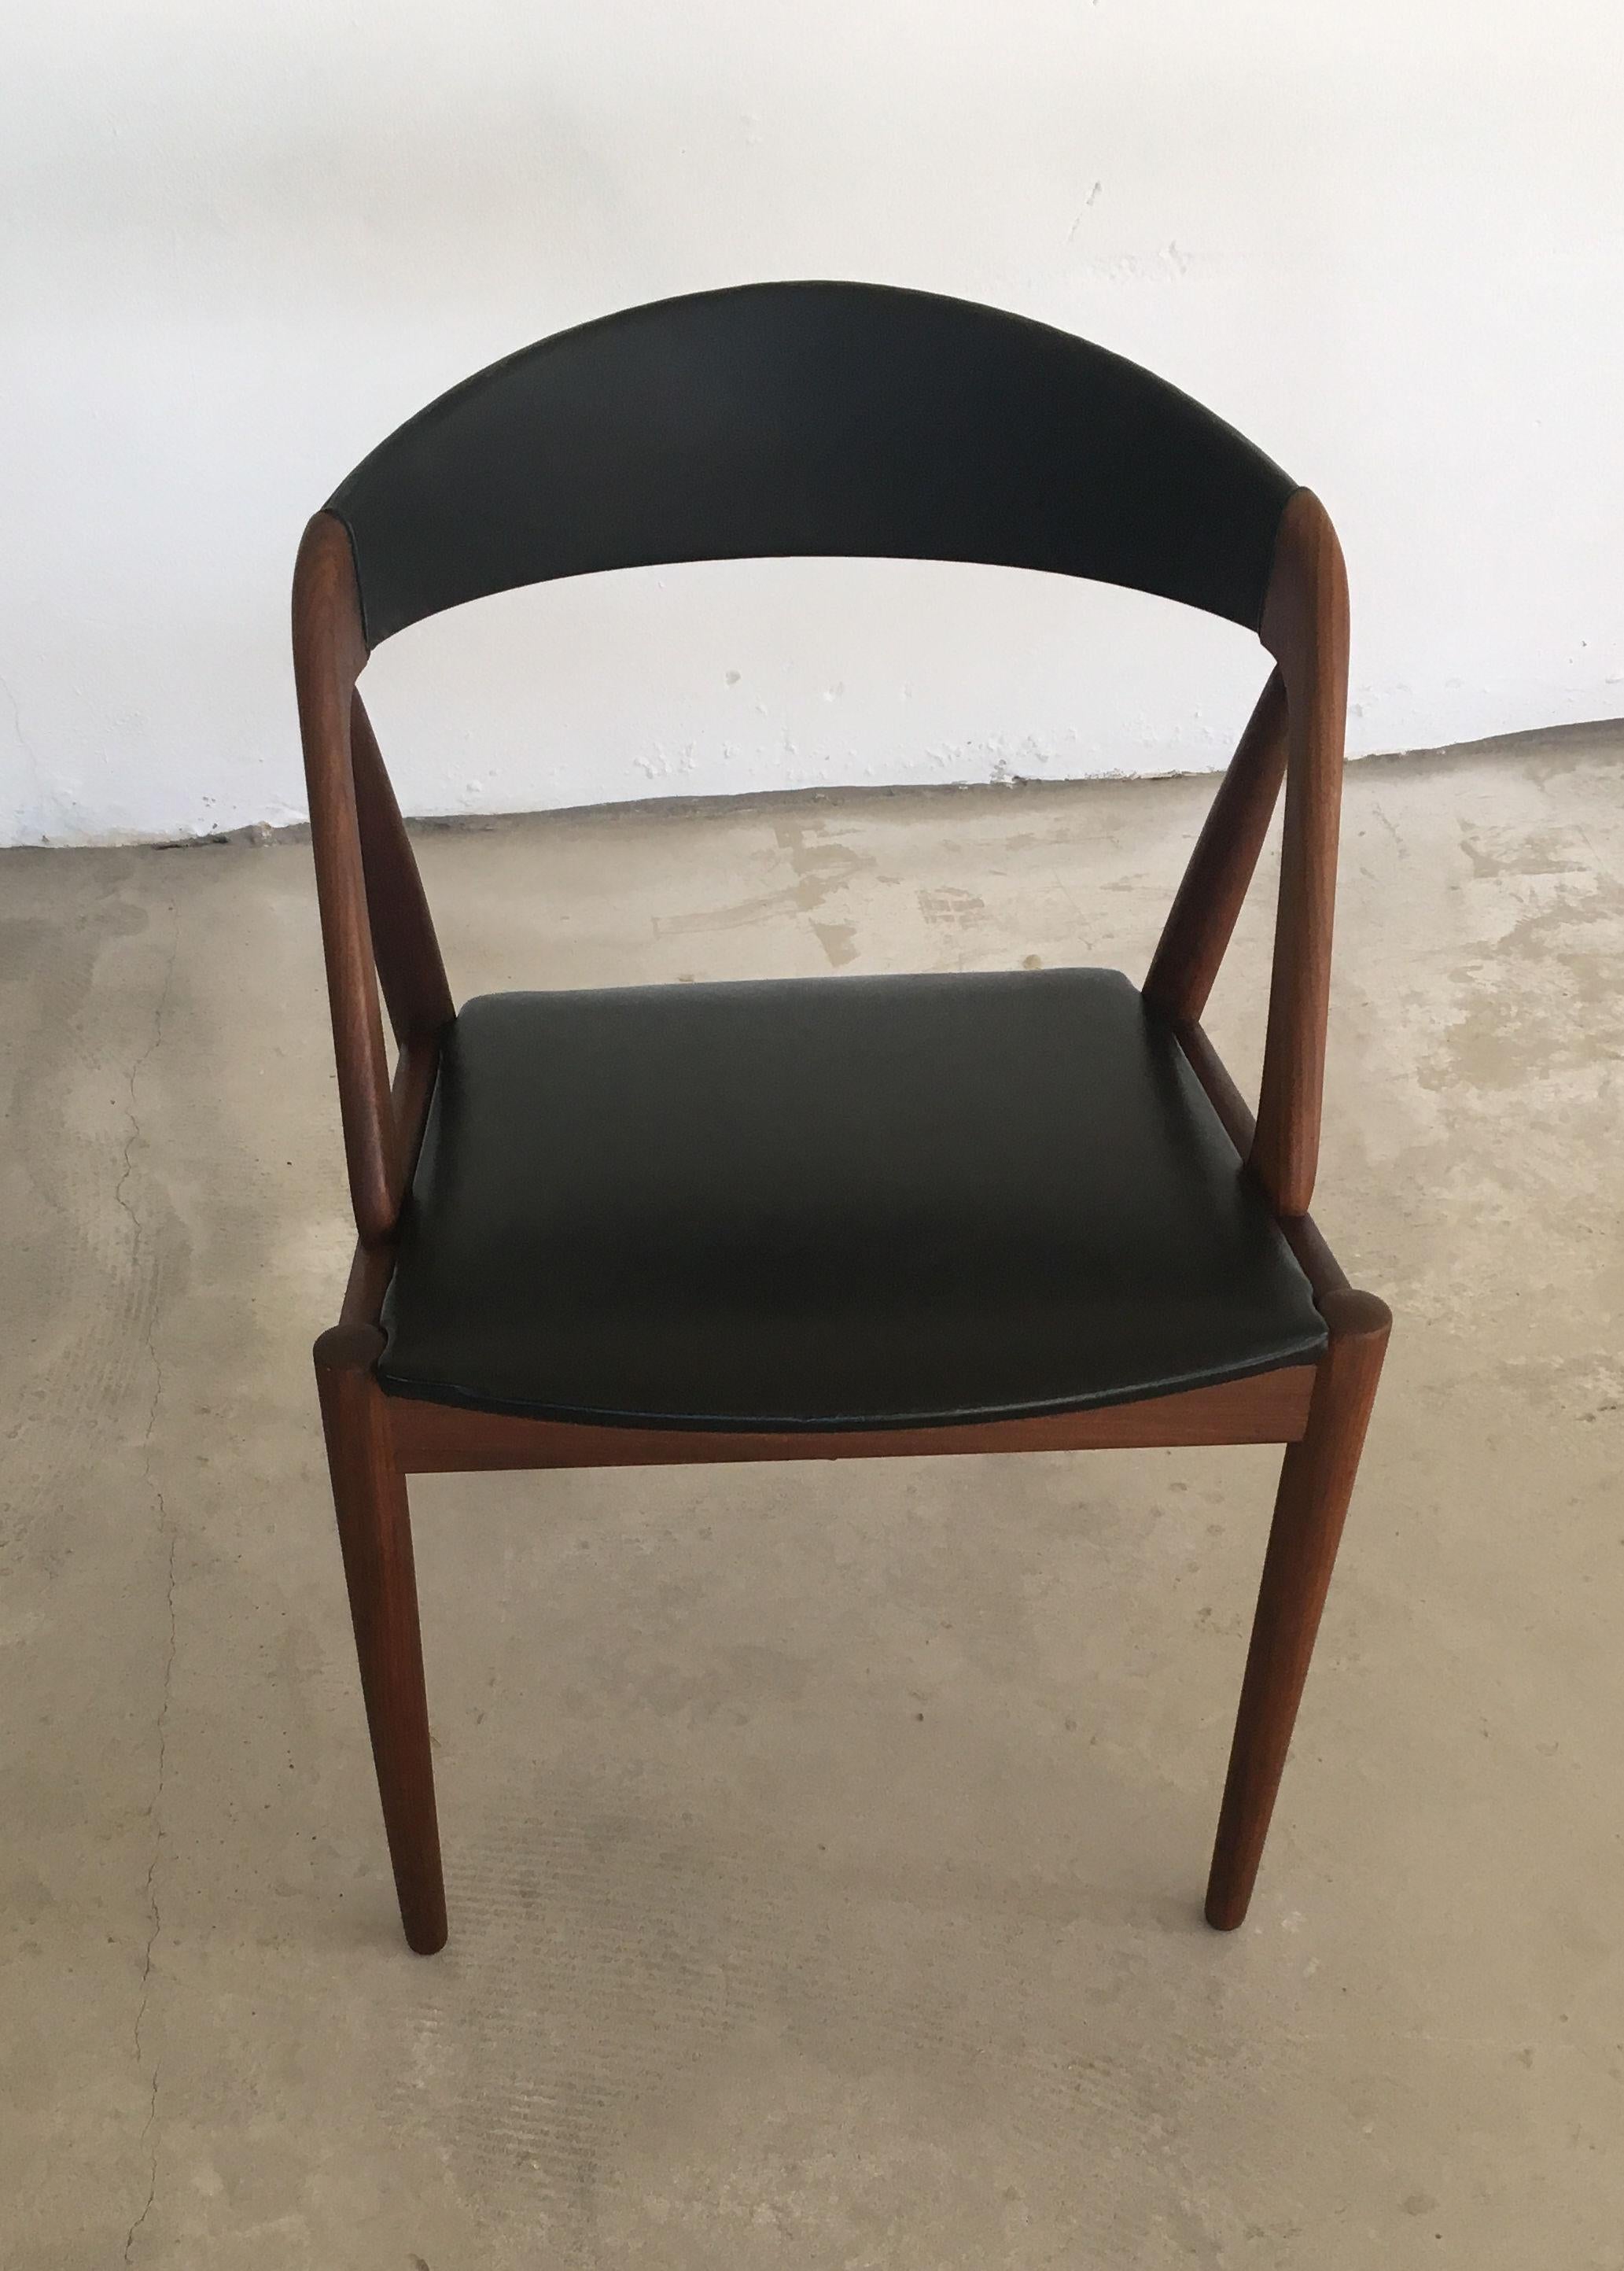 Kai Kristiansens Esszimmerstühle Modell 31 mit aufgearbeiteten Rahmen und schwarzem Lederbezug.

Die Stühle mit dem A-Gestell Modell 31 wurden 1956 von Kai Kristiansen entworfen. Das Modell mit seinen geschwungenen, geraden und schrägen Linien und